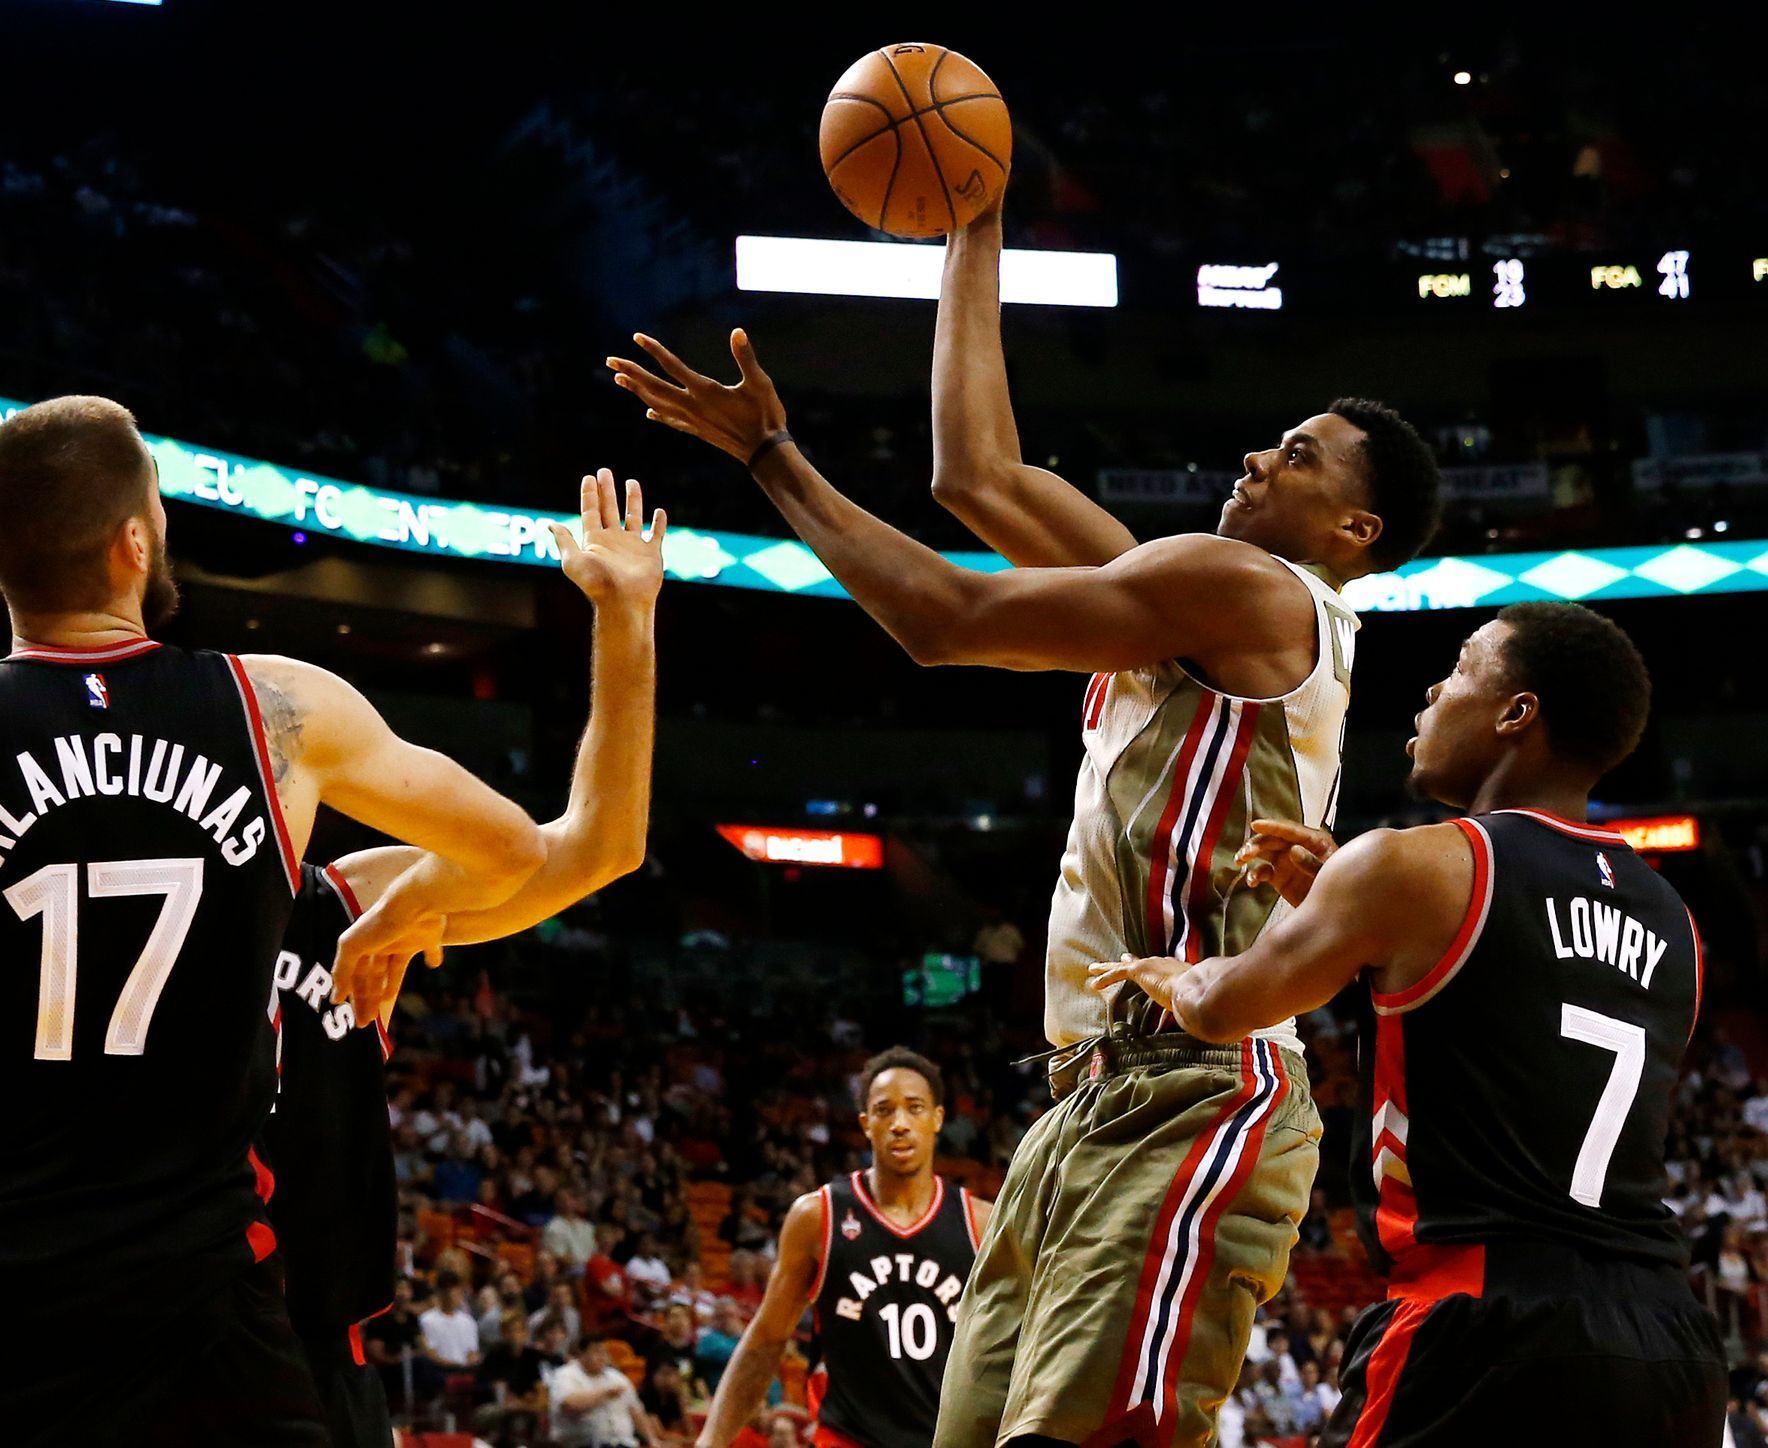 NBA: Toronto Raptors at Miami Heat (Whiteside, Kyle Lowry (7), Jonas Valanciunas)